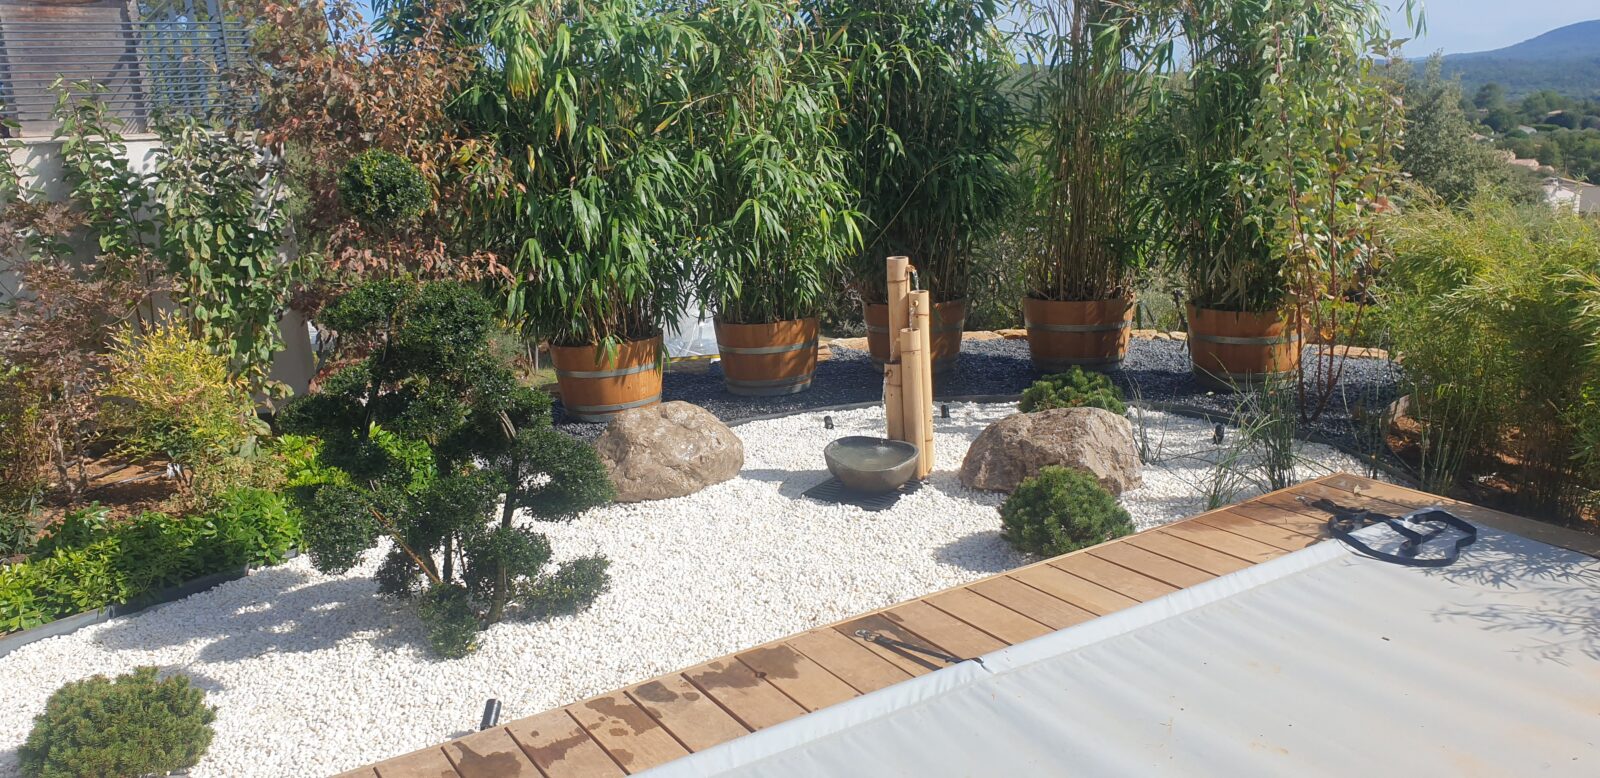 Une atmosphère naturelle dans l'arrière-cour avec le jardin zen